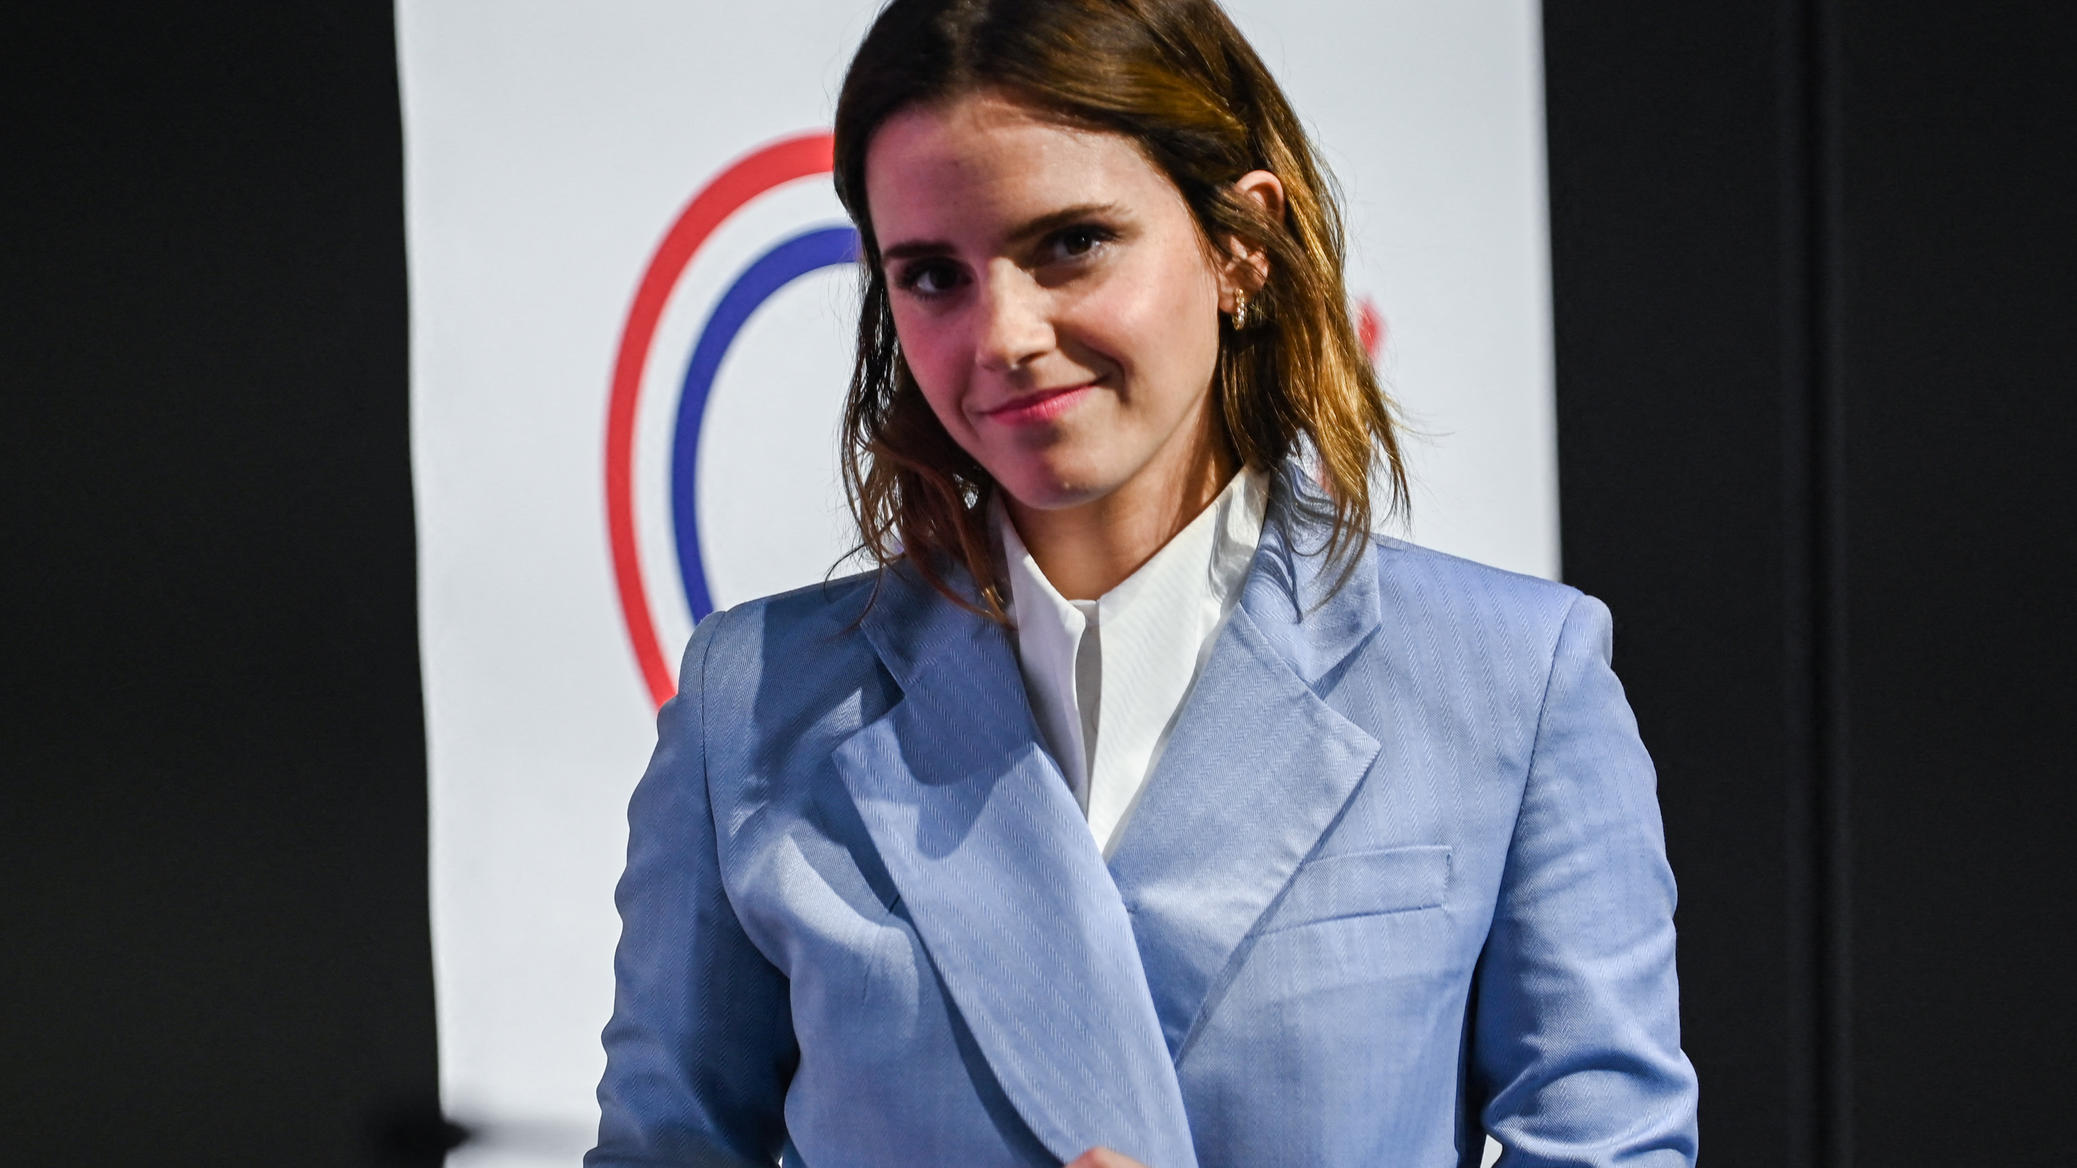 Paris im Mai: Emma Watson spricht beim "G7 Equality Meeting" über die Gleichstellung der Geschlechter.